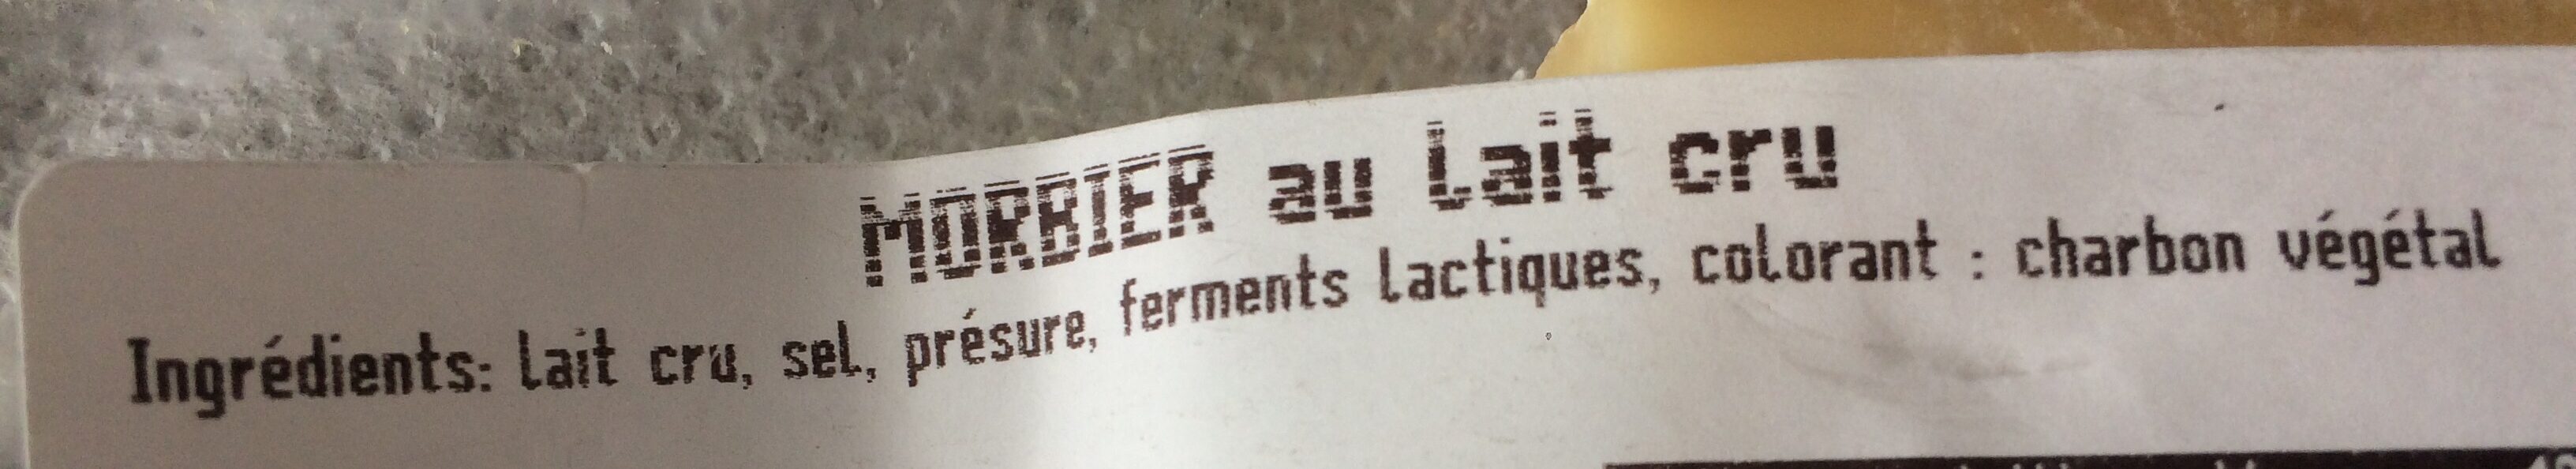 Morbier aop fe 180g massif ls - Ingredients - fr